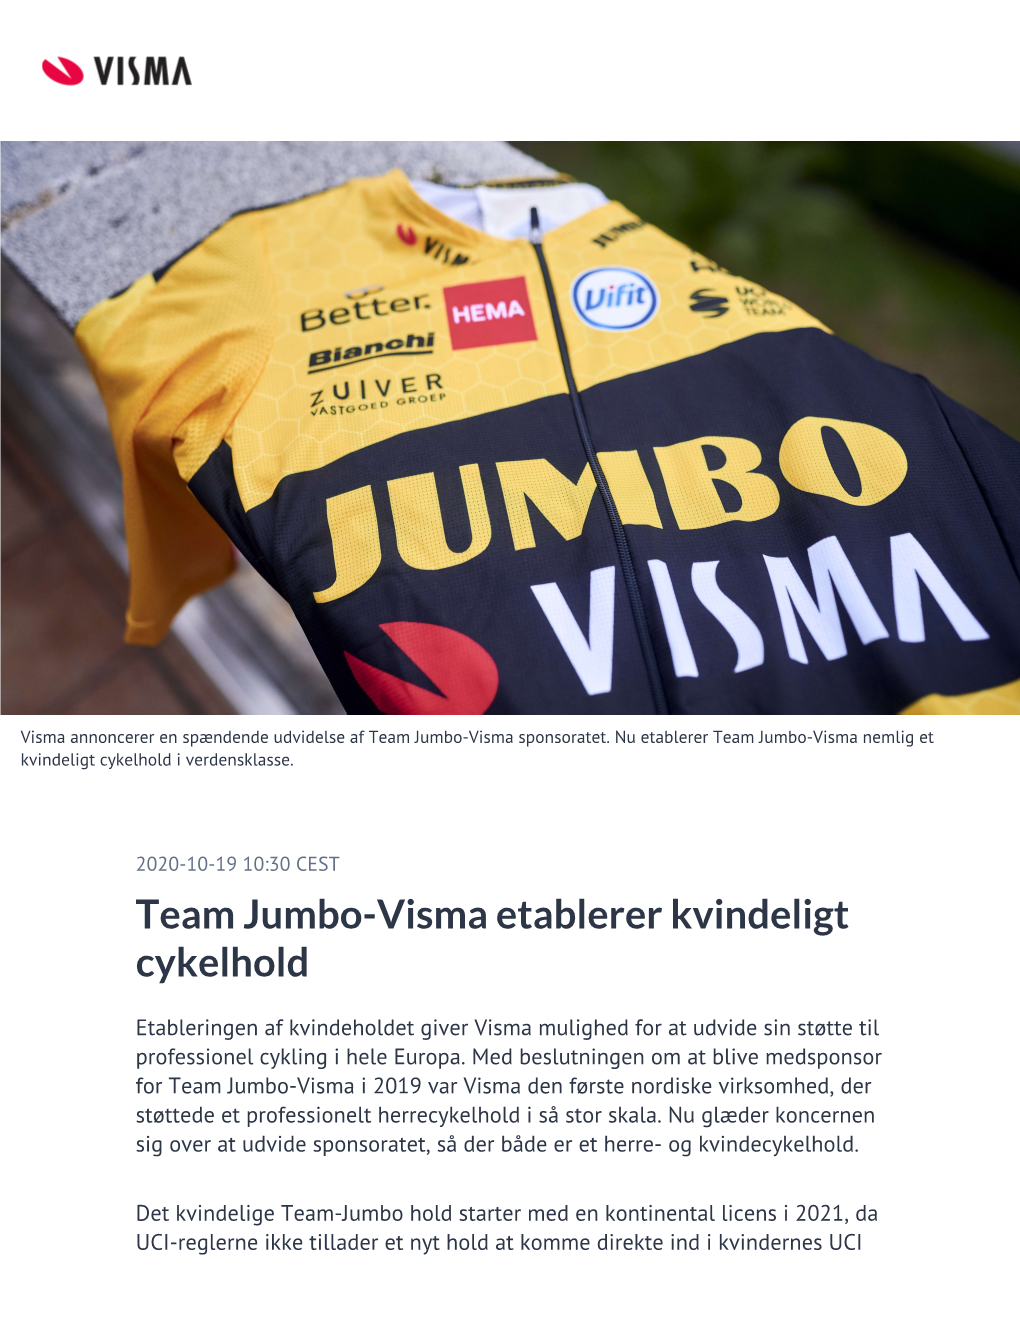 Team Jumbo-Visma Etablerer Kvindeligt Cykelhold